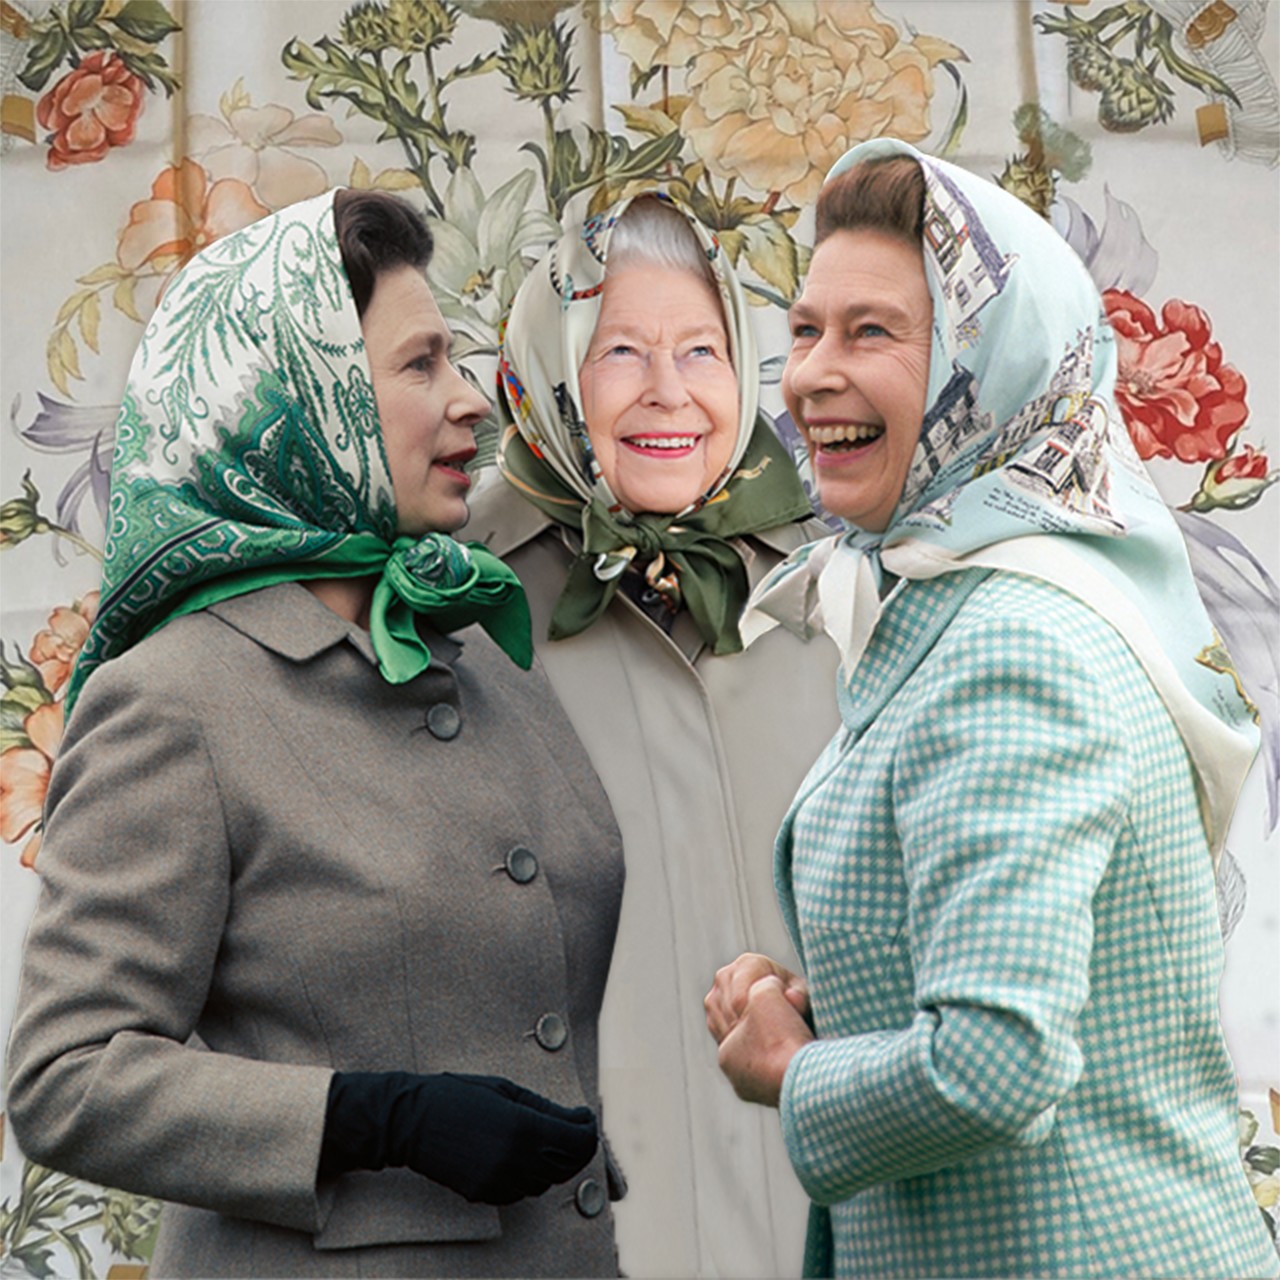 Rainha Elizabeth 2ª com lenço de seda na cabeça (Foto: BBC News)